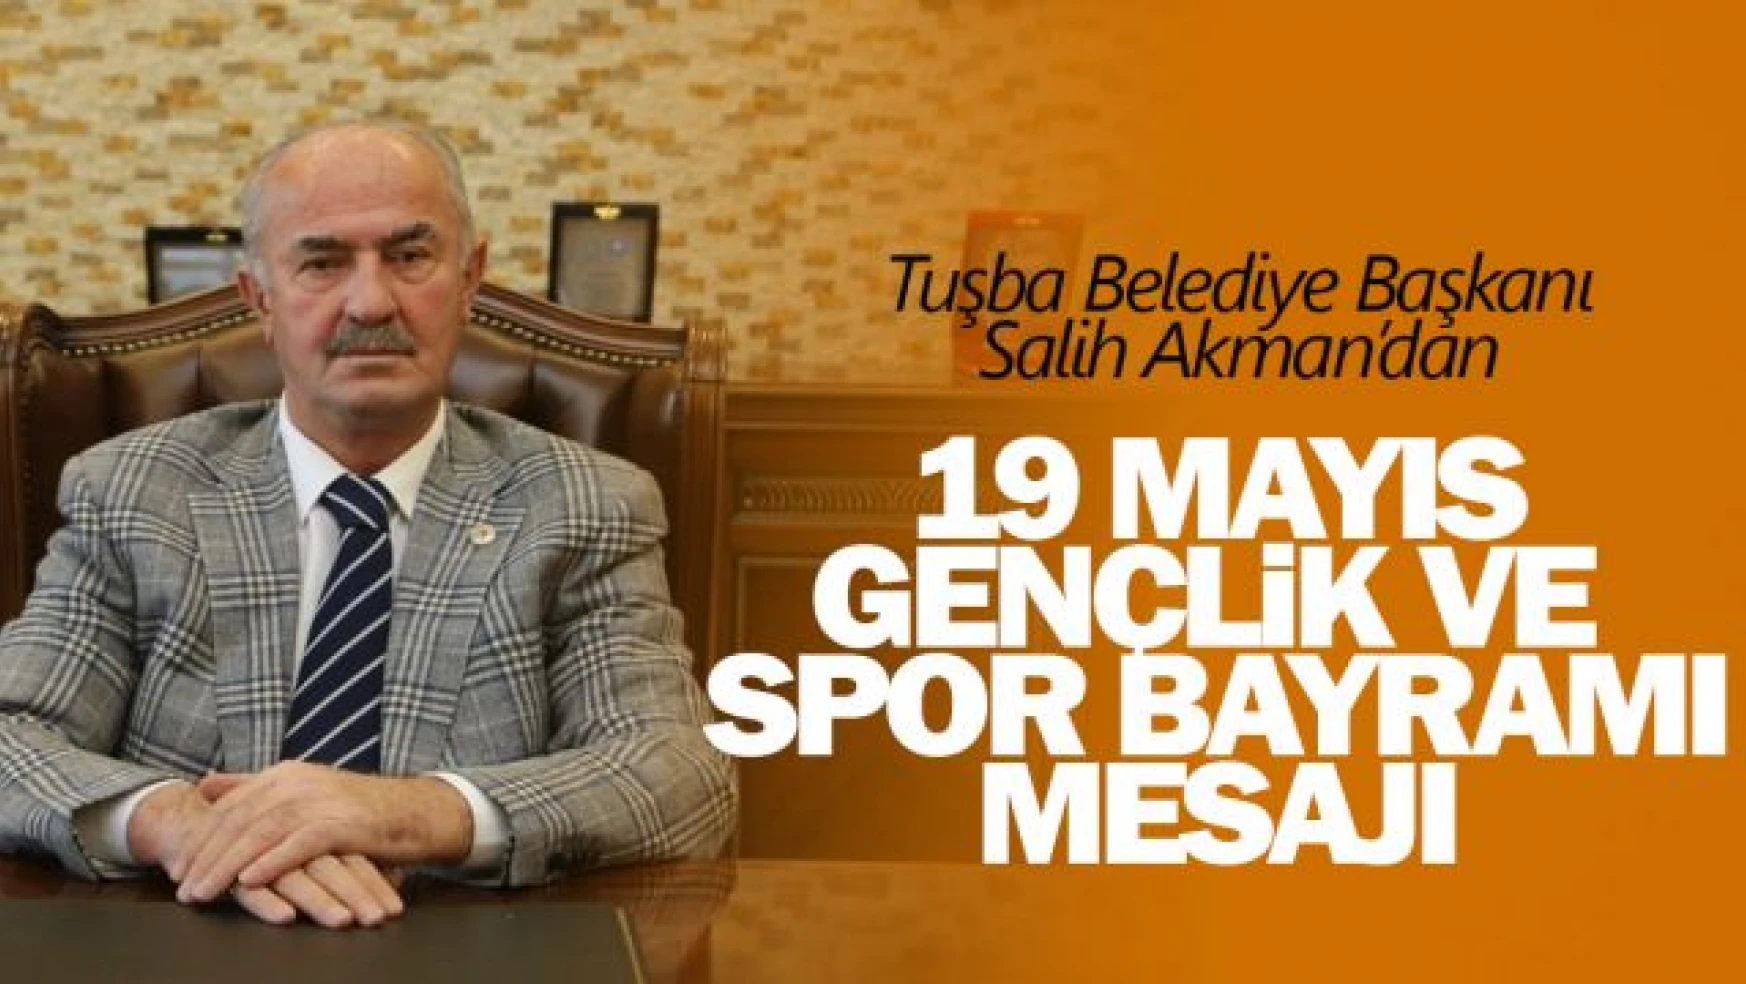 Tuşba Belediye Başkanı Salih Akman, 19 Mayıs Gençlik ve Spor Bayramını kutladı